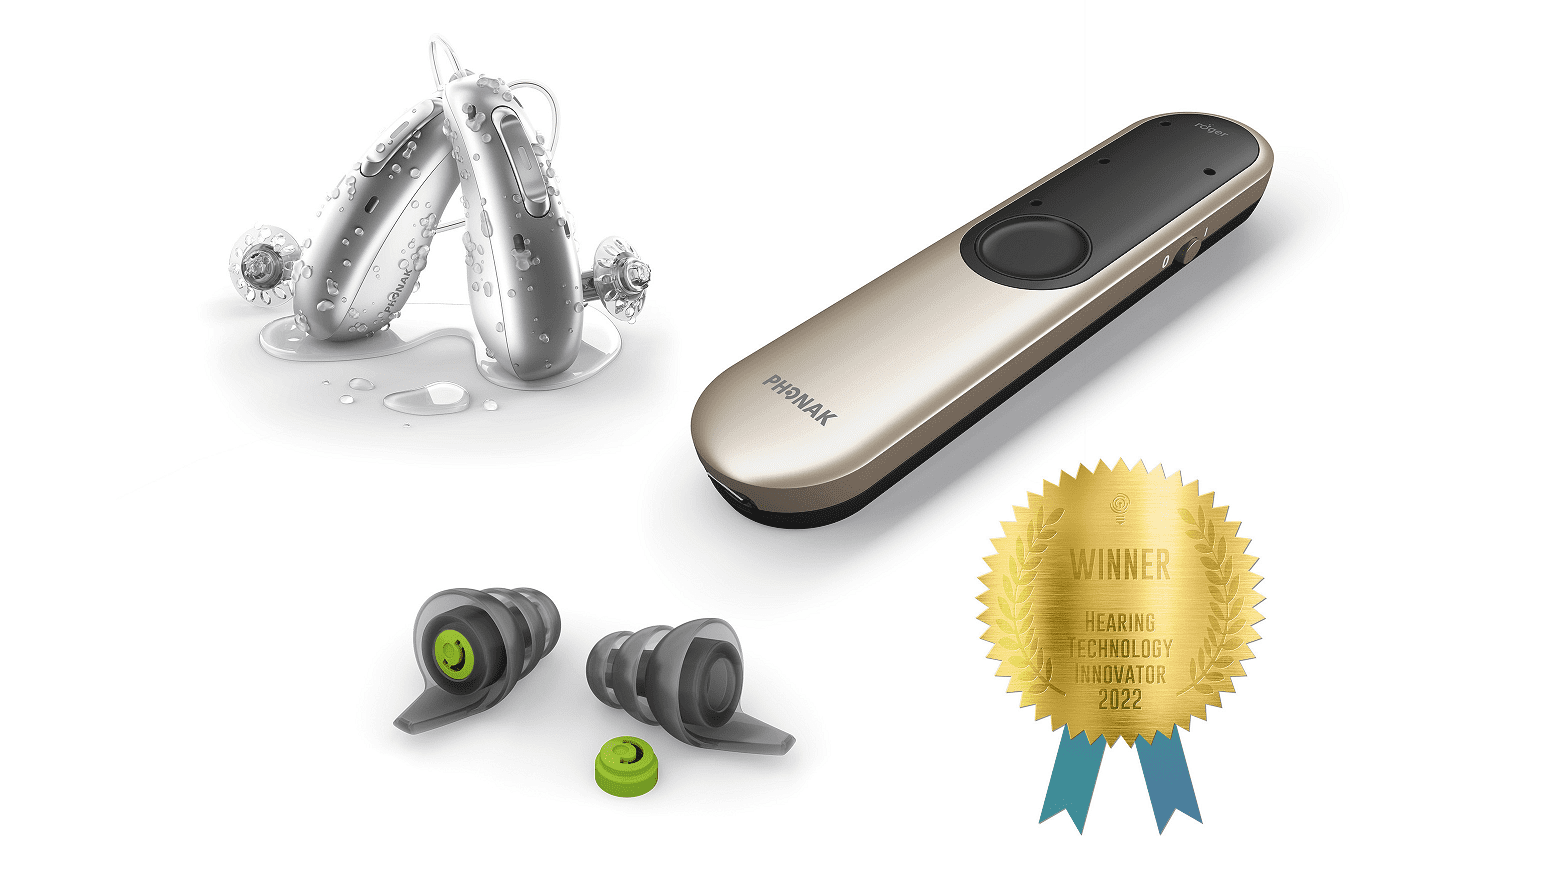 Phonak vinner tre kategorier vid Hearing Technology Innovator Awards™